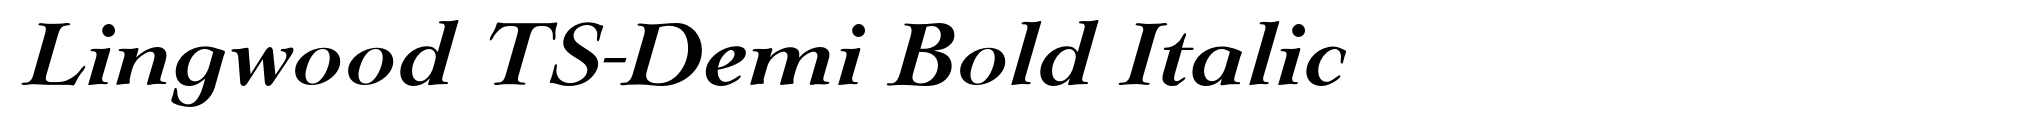 Lingwood TS-Demi Bold Italic image